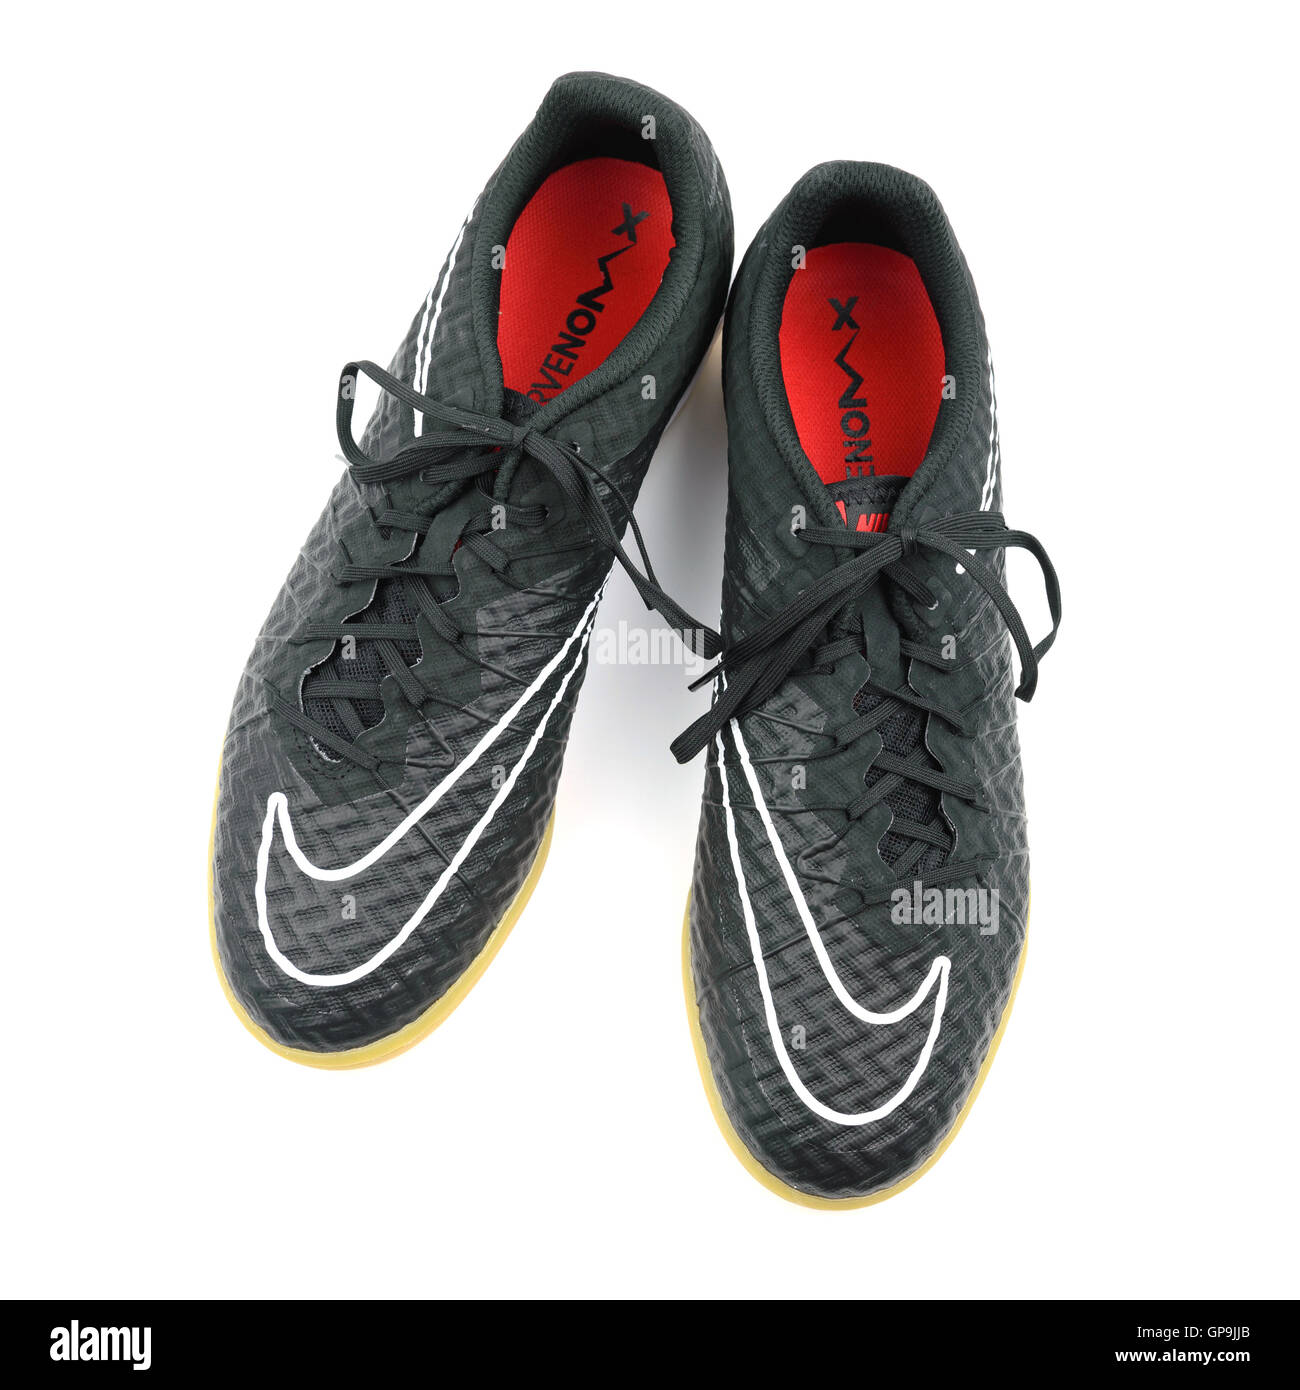 Chaussures De Foot Nike Banque d'image et photos - Alamy